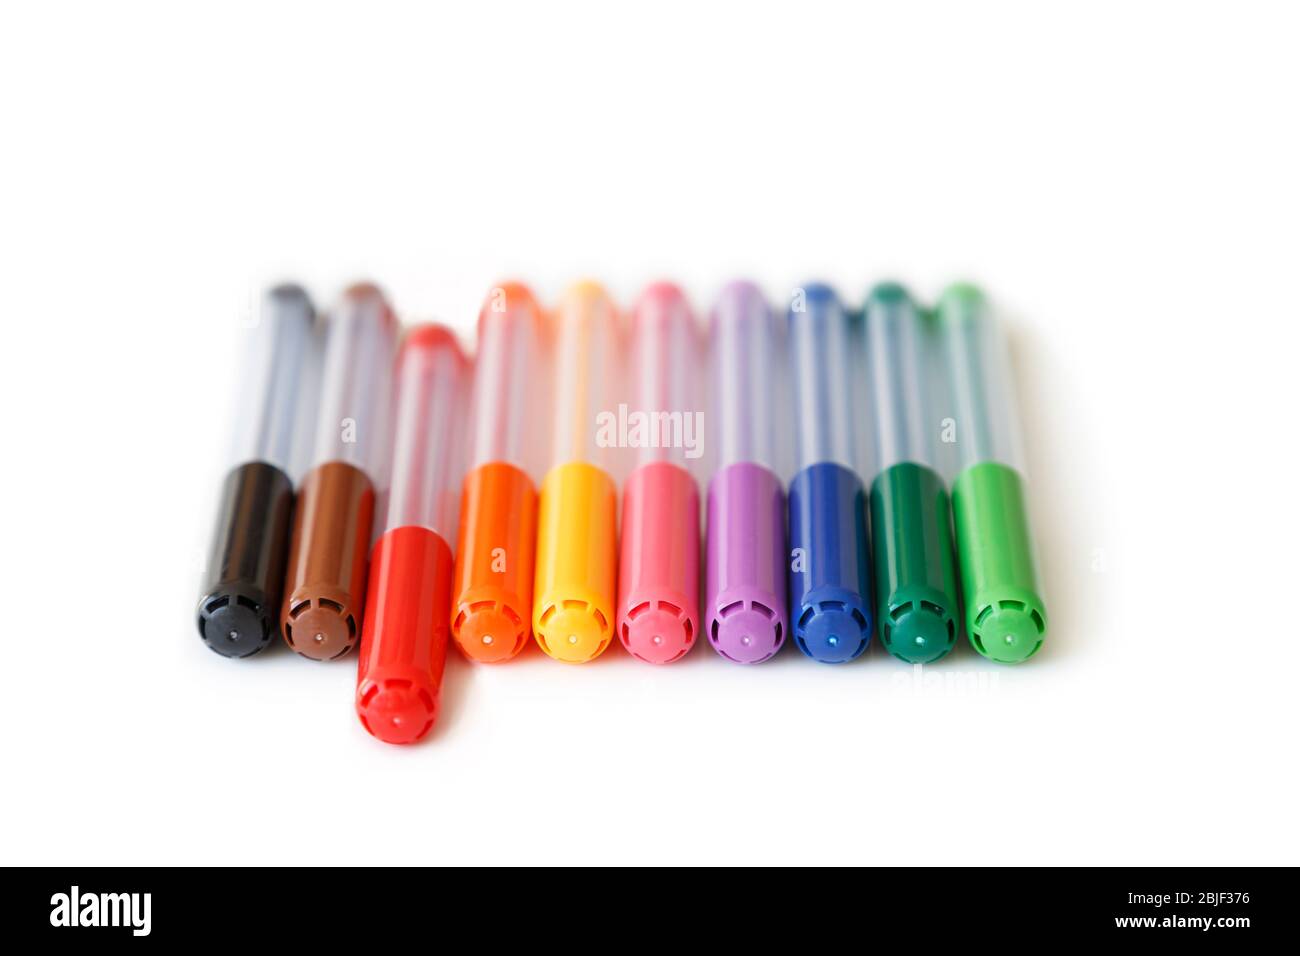 Primer plano de un conjunto de coloridos marcadores de color arco iris en  una vista de fila y ángulo bajo. El marcador rojo es aparte, el concepto de  destacar. Aislado sobre blanco